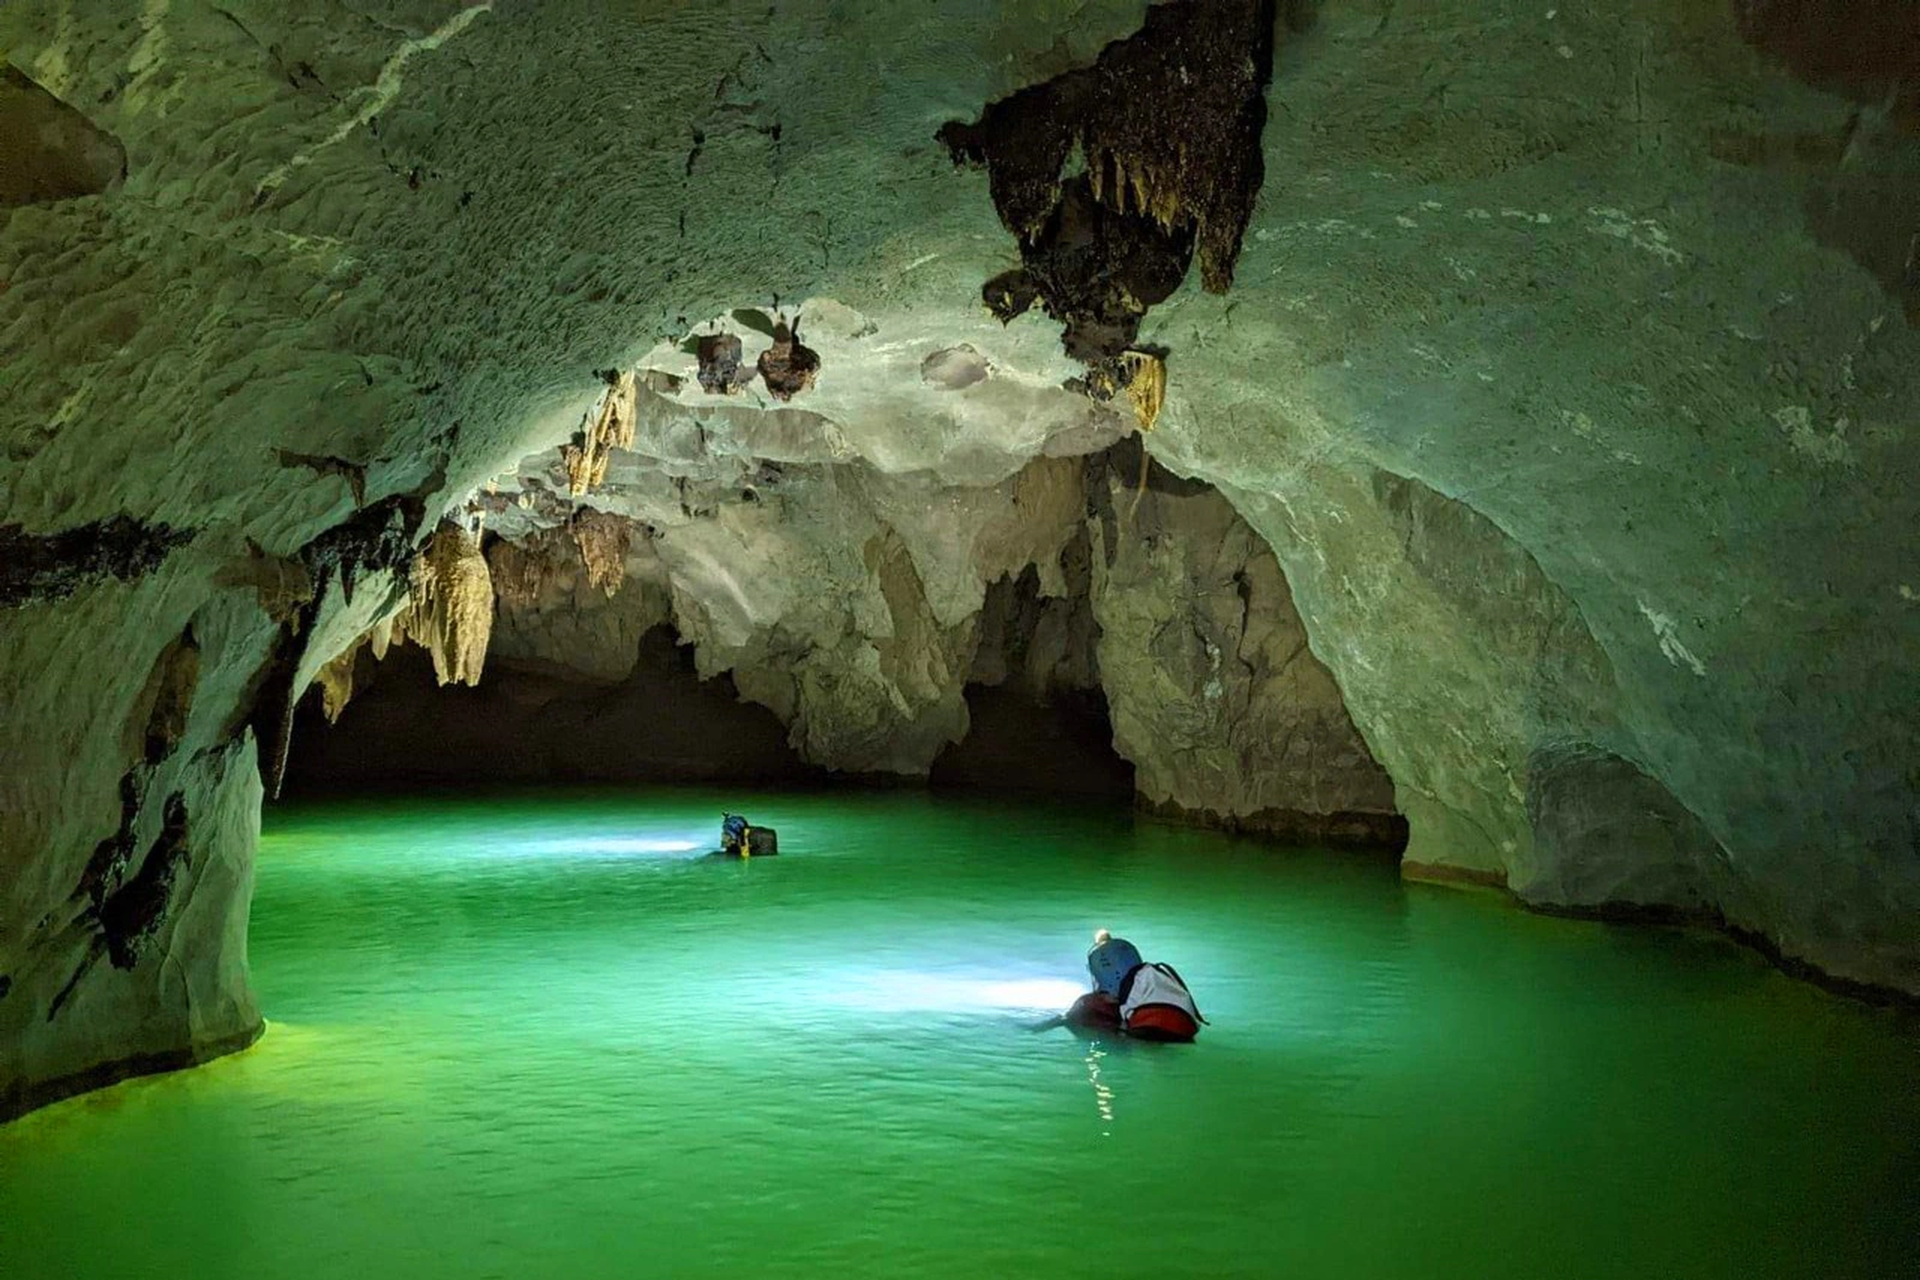 Phát hiện hệ thống hang động nguyên sơ, dài hơn 3,3km tại Quảng Bình - 4